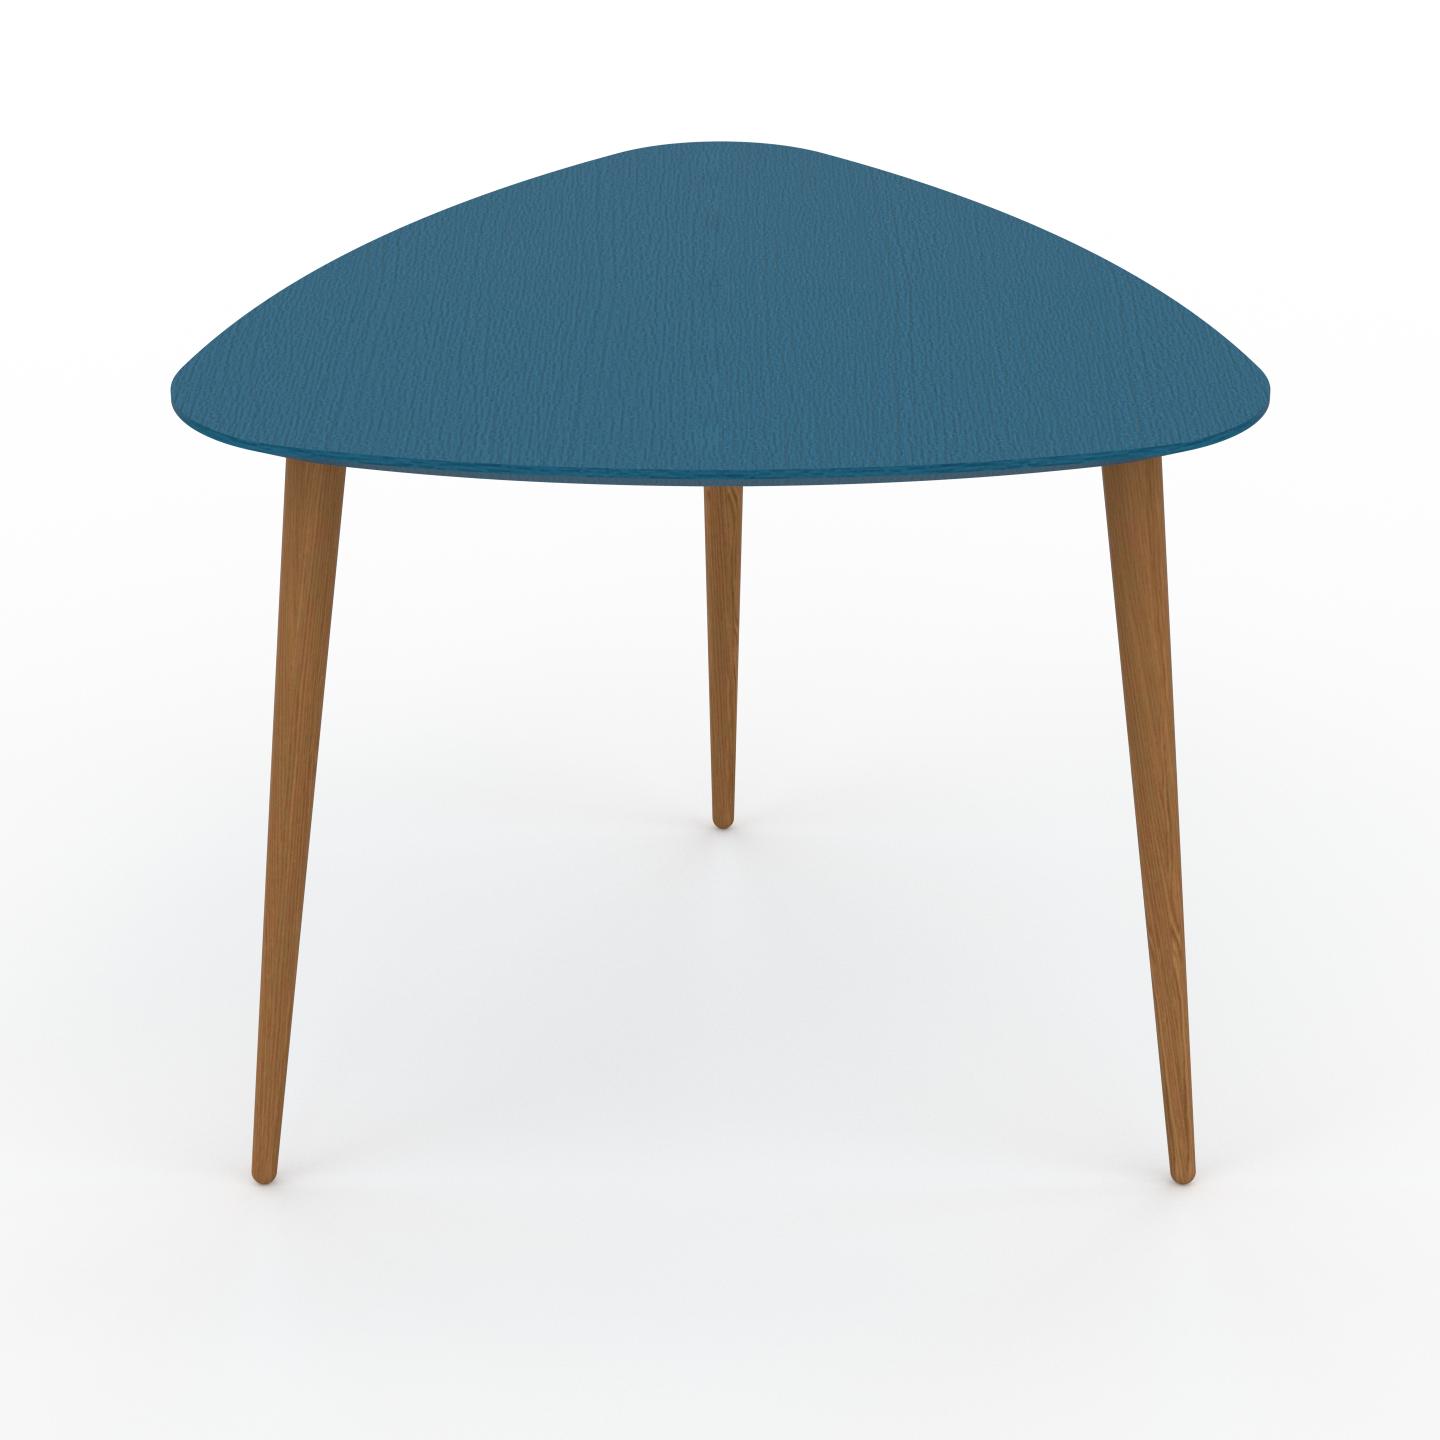 MYCS Couchtisch Blaugrün - Eleganter Sofatisch: Beste Qualität, einzigartiges Design - 59 x 50 x 61 cm, Konfigurator